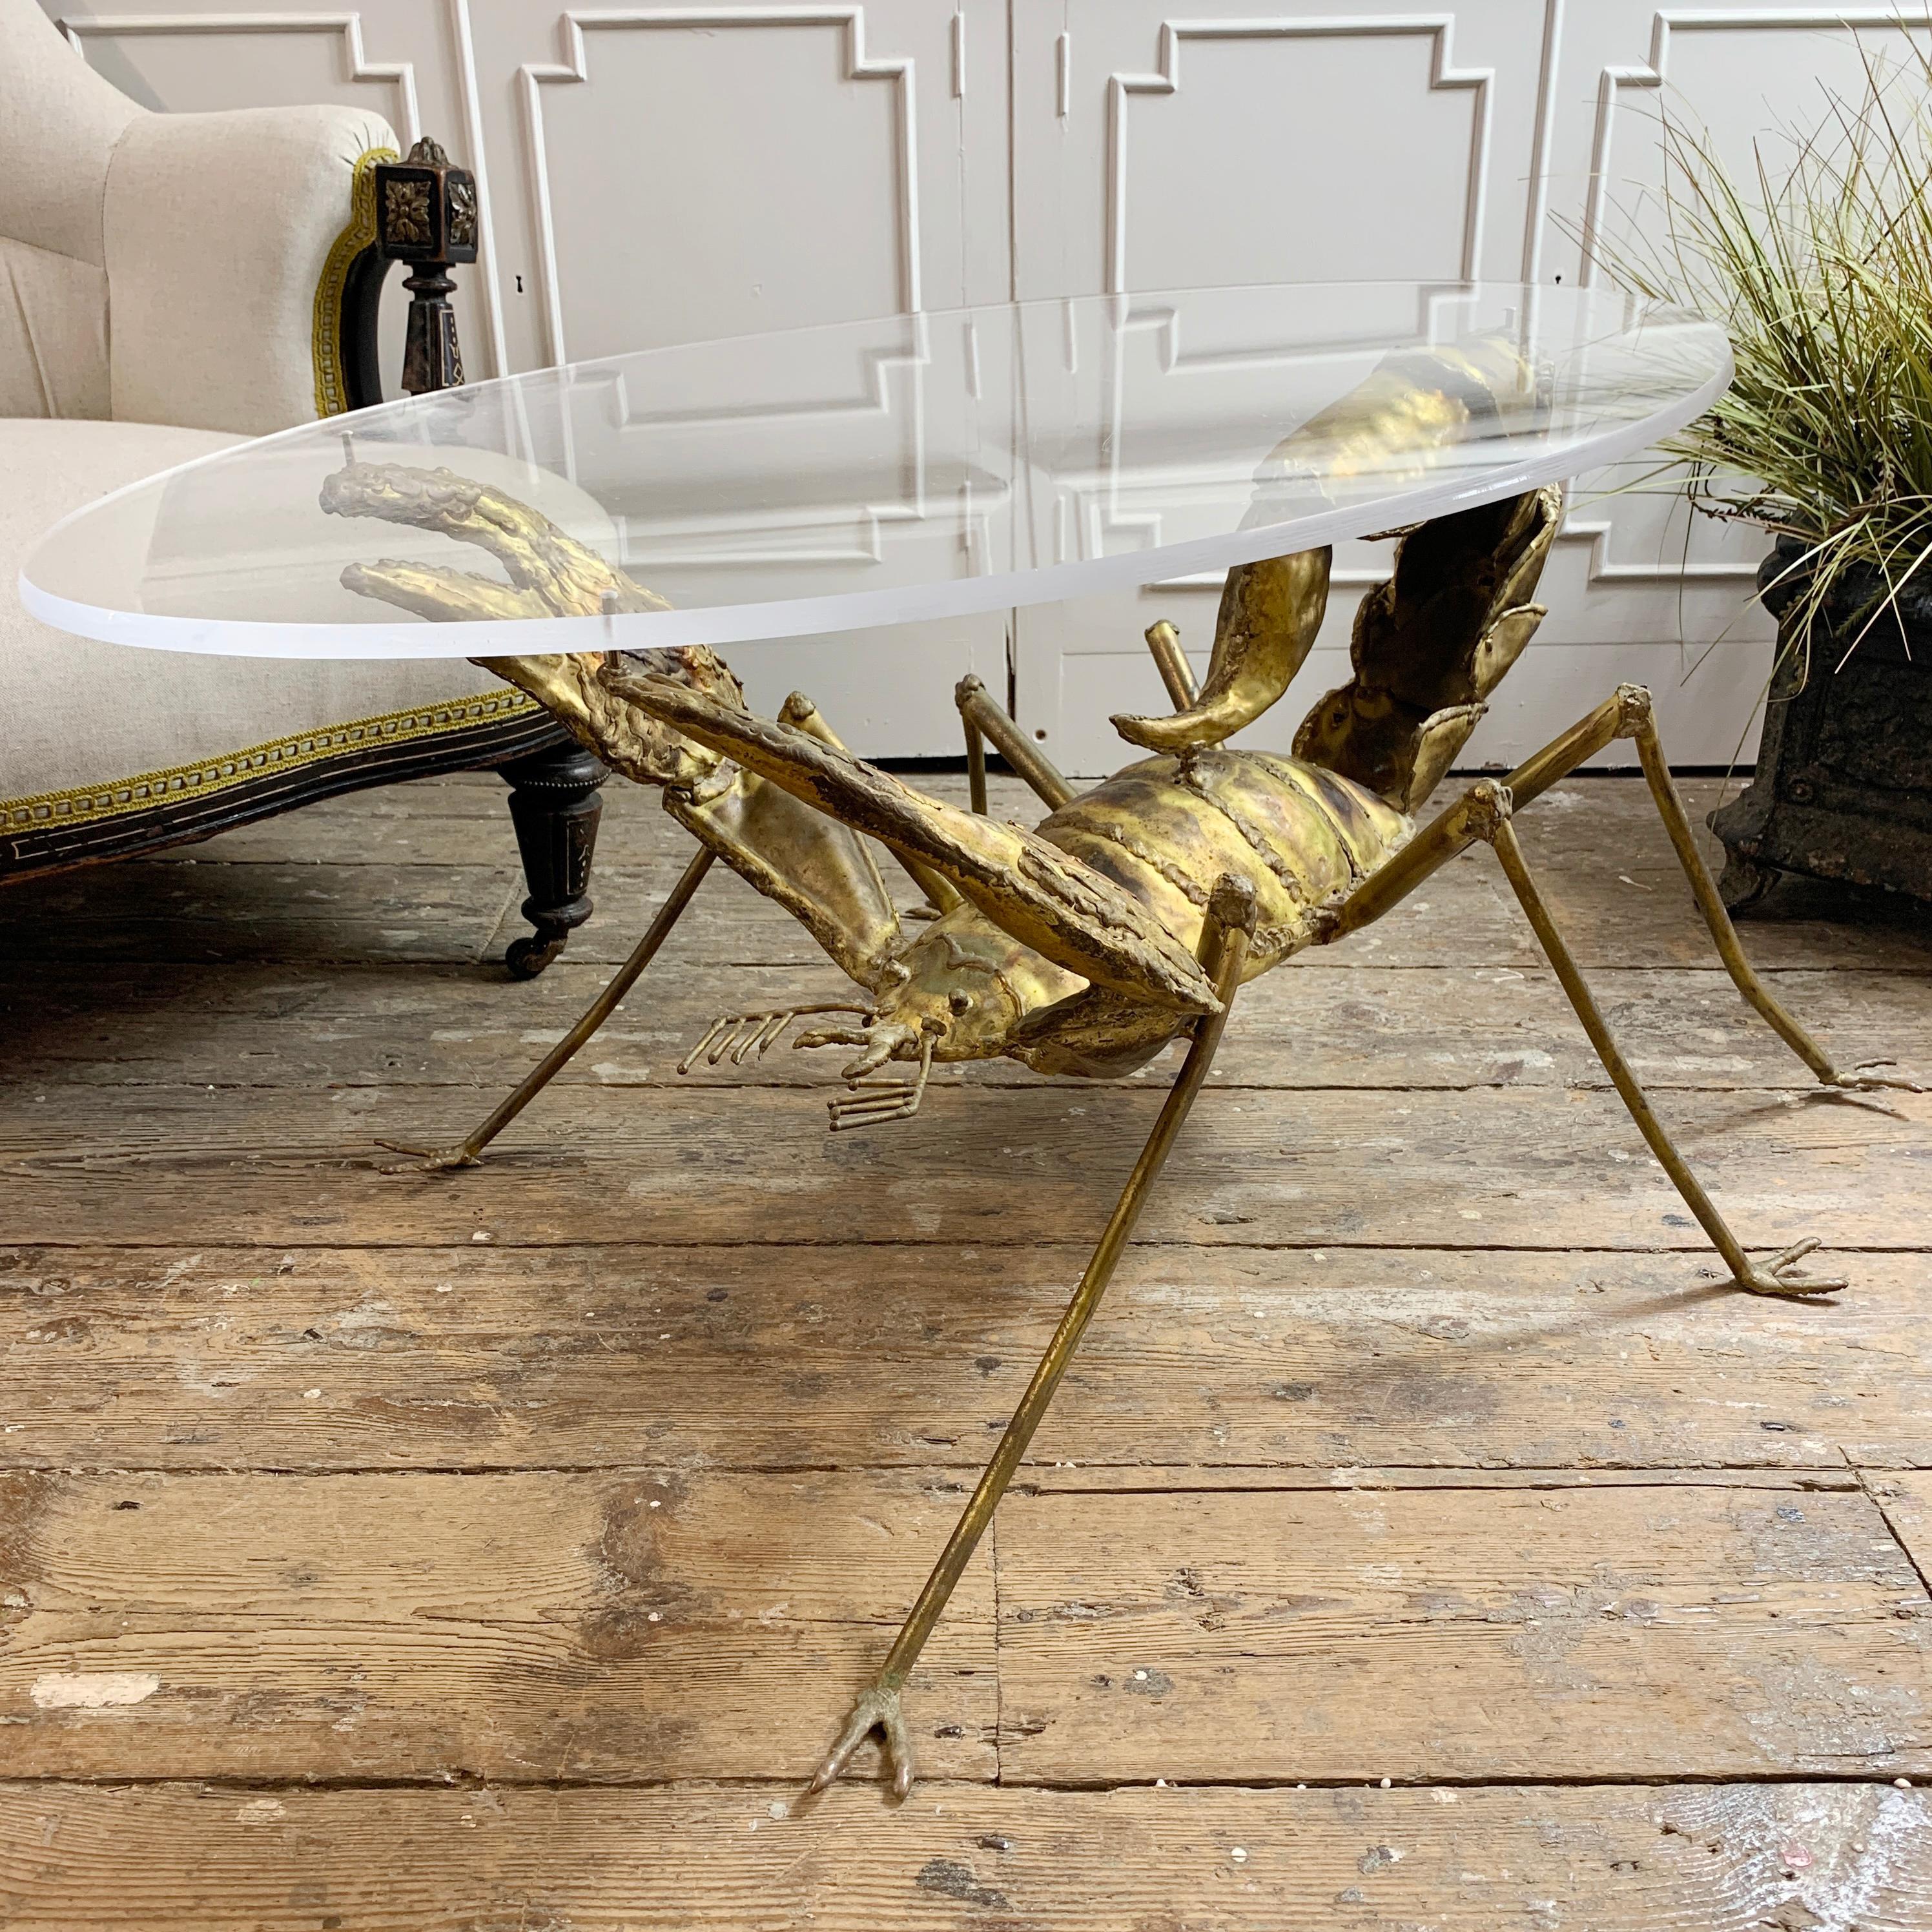 Une table Scorpion exceptionnelle en laiton et acier créée par le célèbre sculpteur et artiste français François Melin dans les années 1970. La table a été fabriquée à la main par Melin à l'aide de pièces individuelles en laiton:: façonnées pour